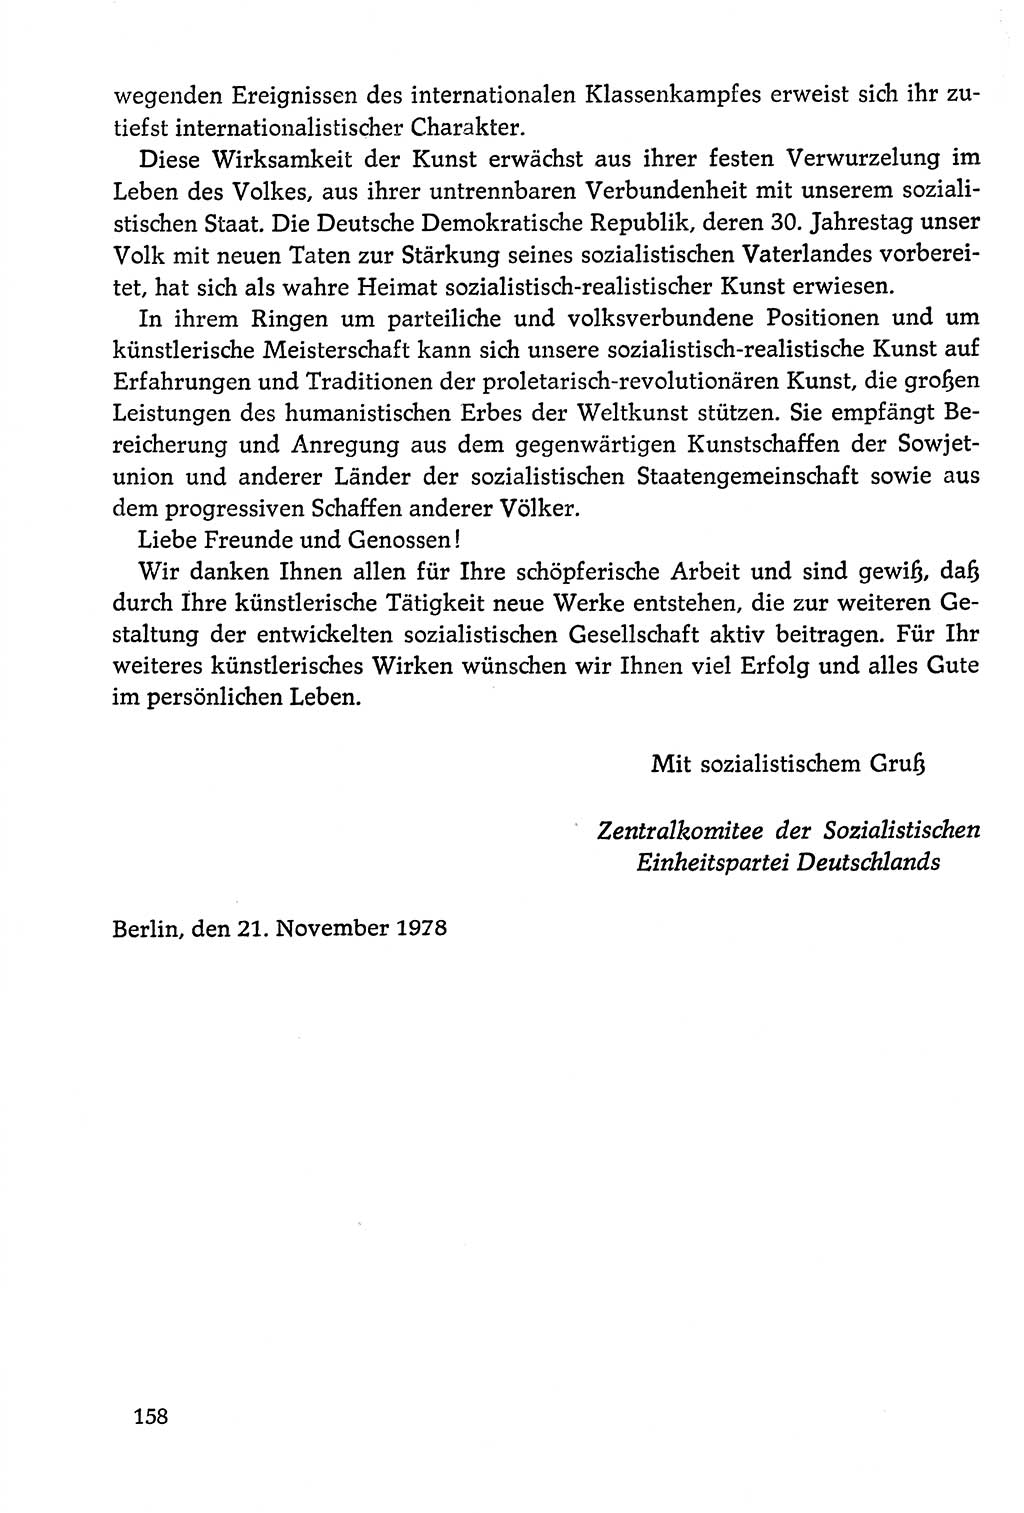 Dokumente der Sozialistischen Einheitspartei Deutschlands (SED) [Deutsche Demokratische Republik (DDR)] 1978-1979, Seite 158 (Dok. SED DDR 1978-1979, S. 158)